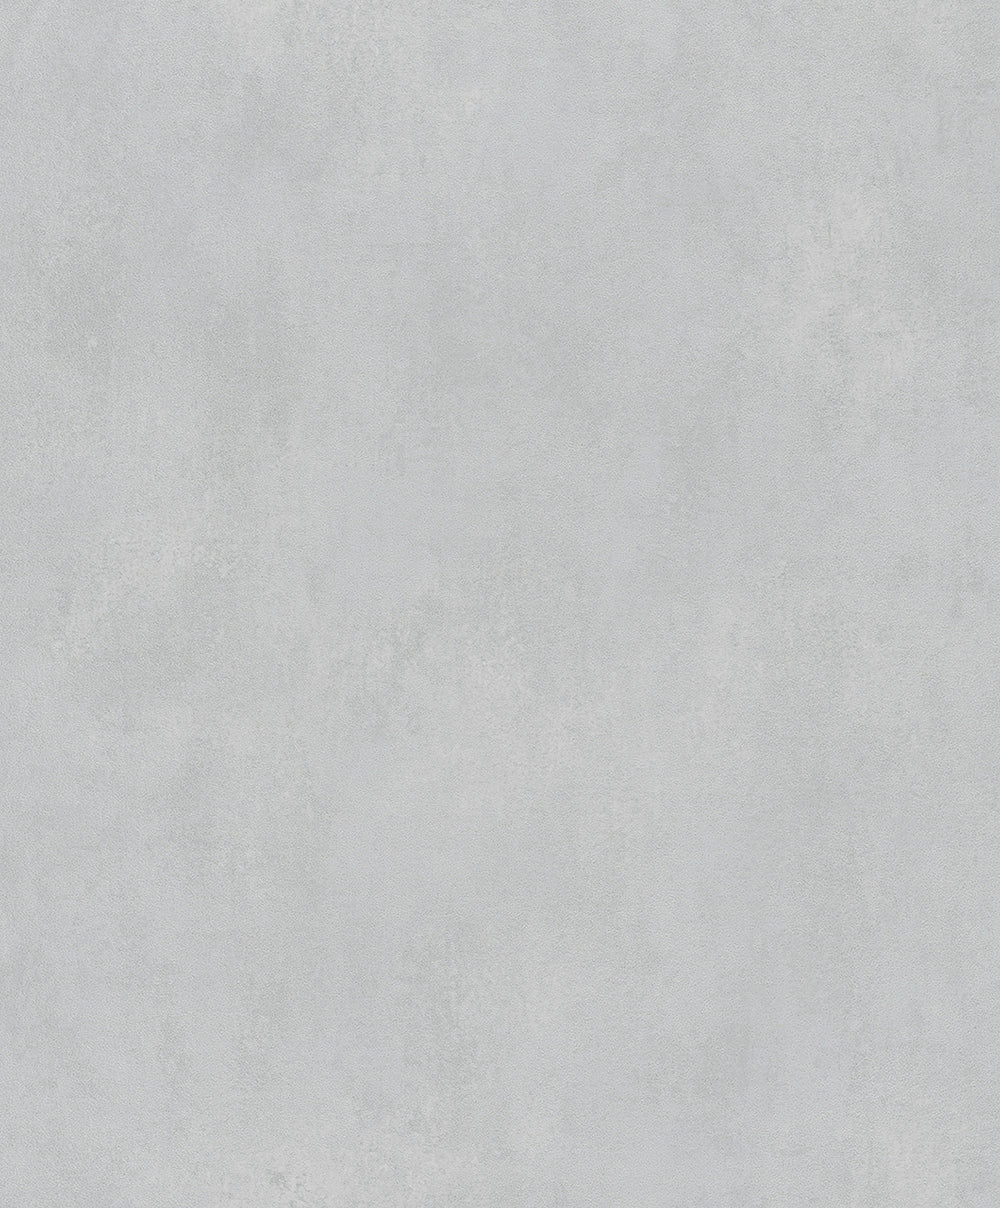 Schoner Wohnen New Spirit - Concrete plain wallpaper Marburg Roll Light Grey  32715